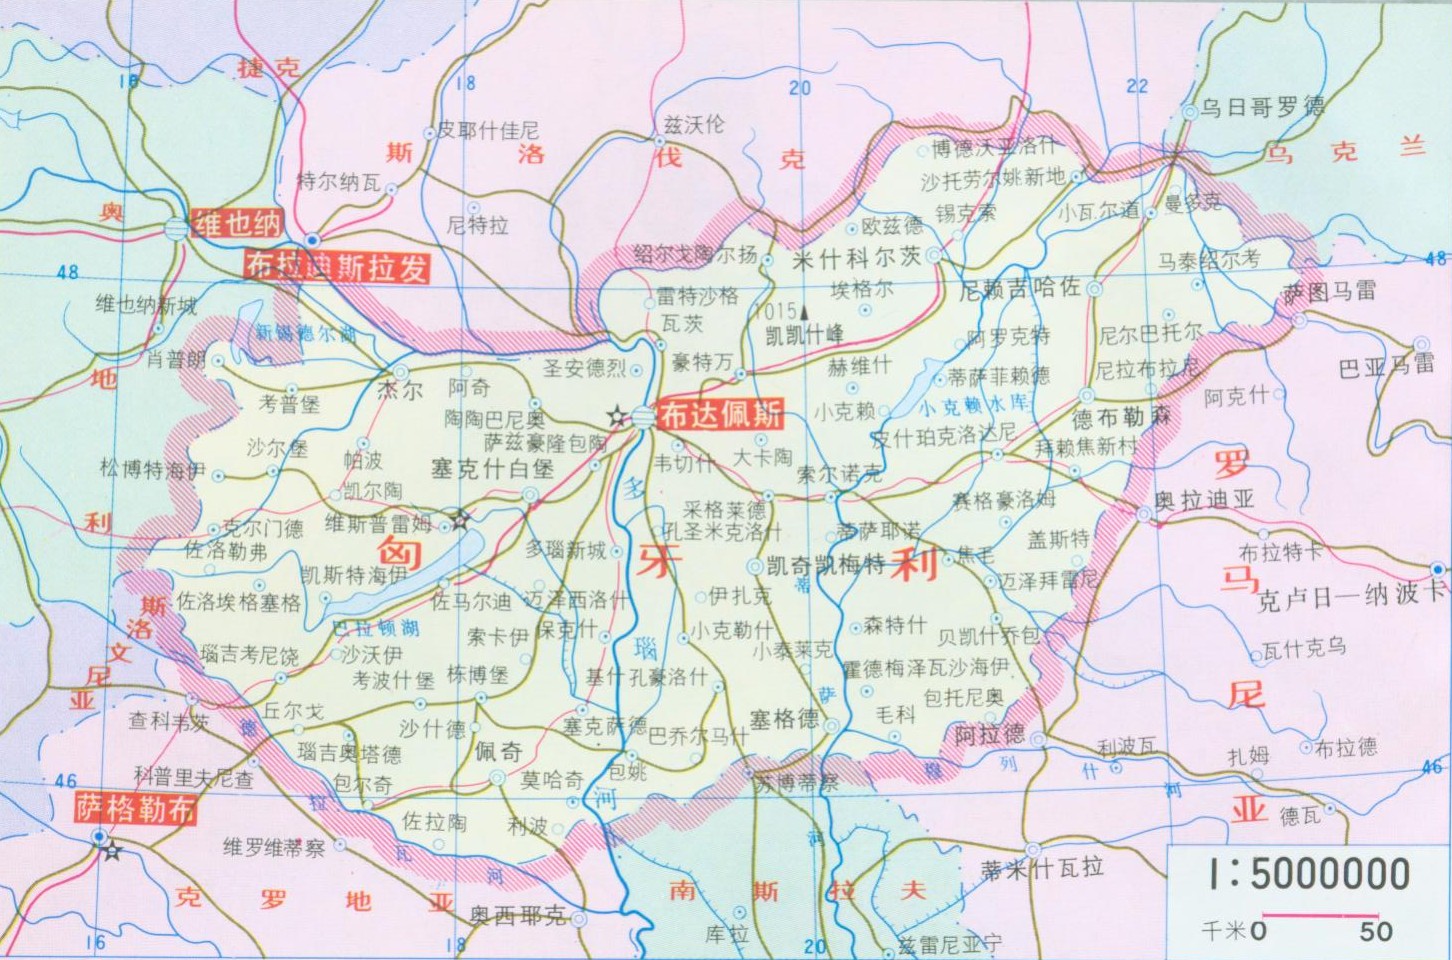 magyarország térkép kiskunfélegyháza Szerintem Kiskunfélegyháza el van írva   (kínai magyar térkép  magyarország térkép kiskunfélegyháza